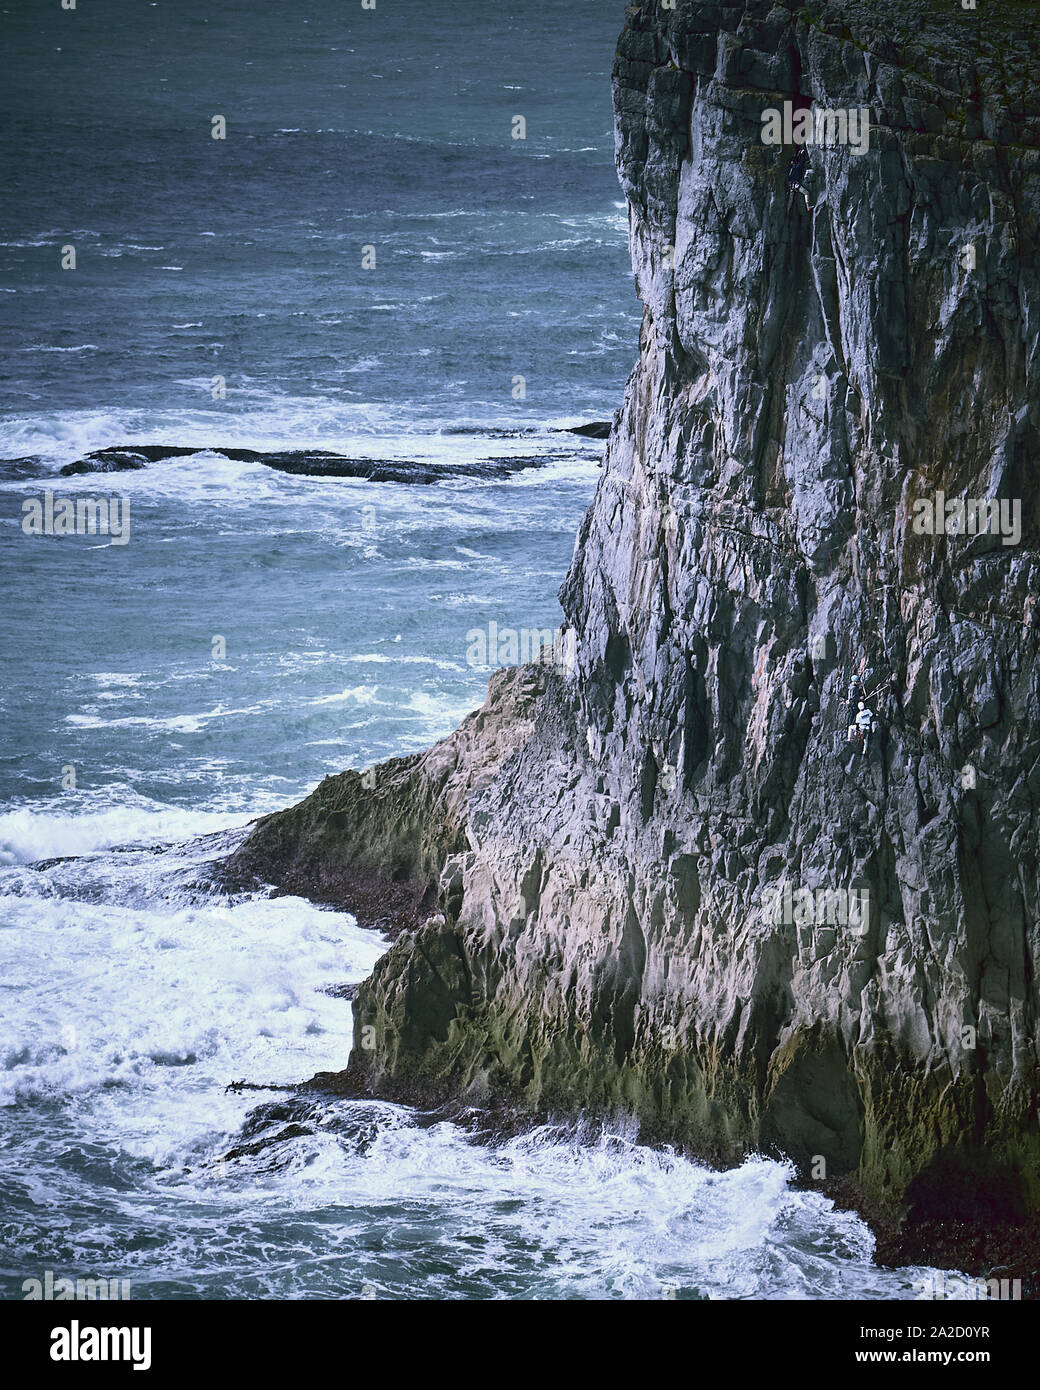 Les grimpeurs ordre croissant les falaises le long de la côte du Pembrokeshire, à proximité de St Govans Castlemartin.au Pays de Galles, Royaume-Uni Banque D'Images